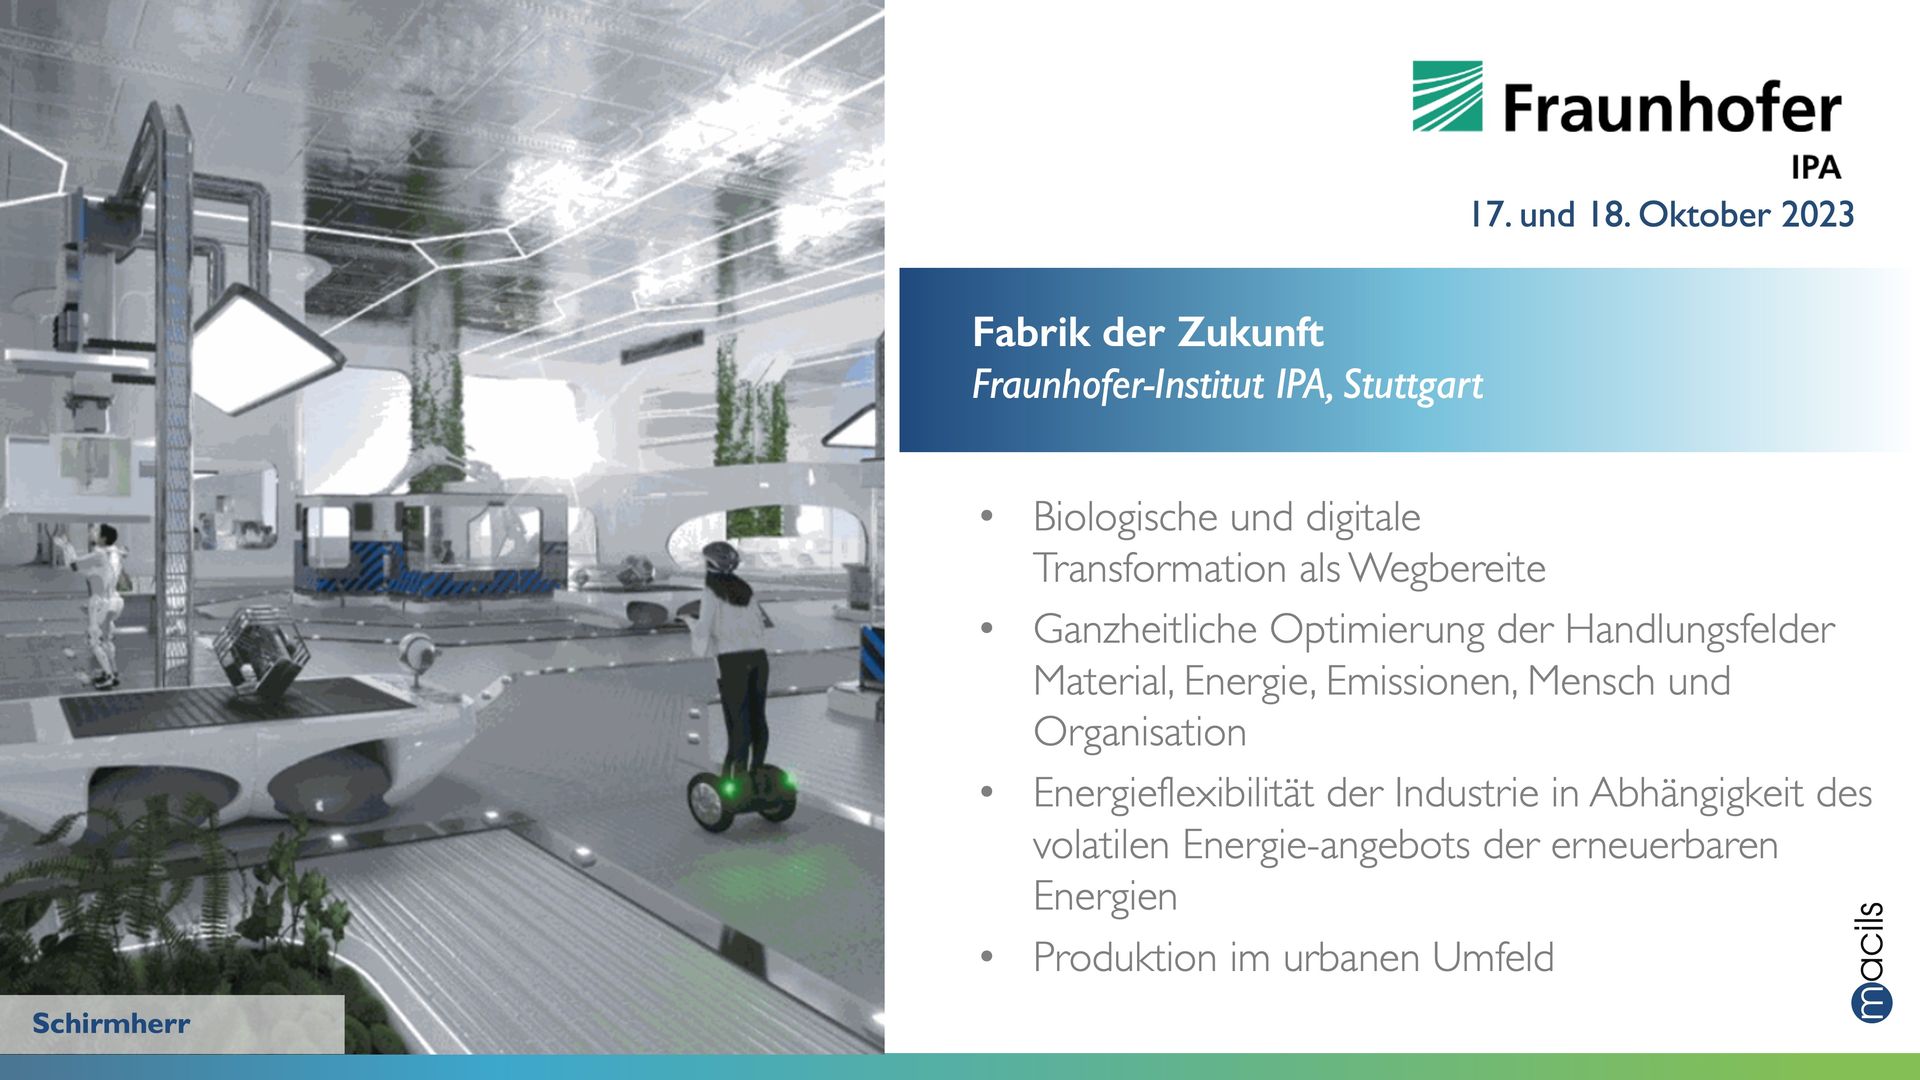 Lernreise "Fabrik der Zukunft" Fraunhofer IPA